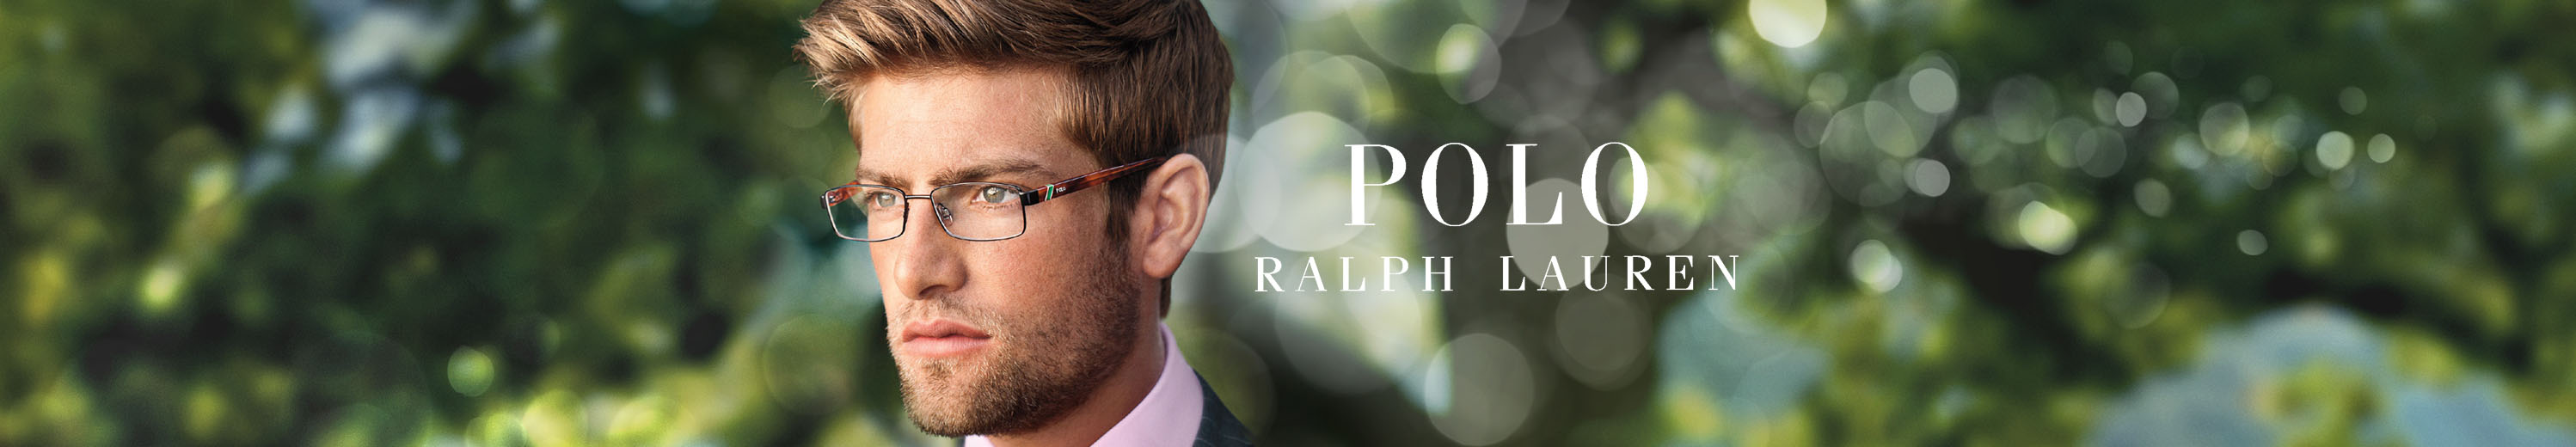 Polo Eyeglasses for Men